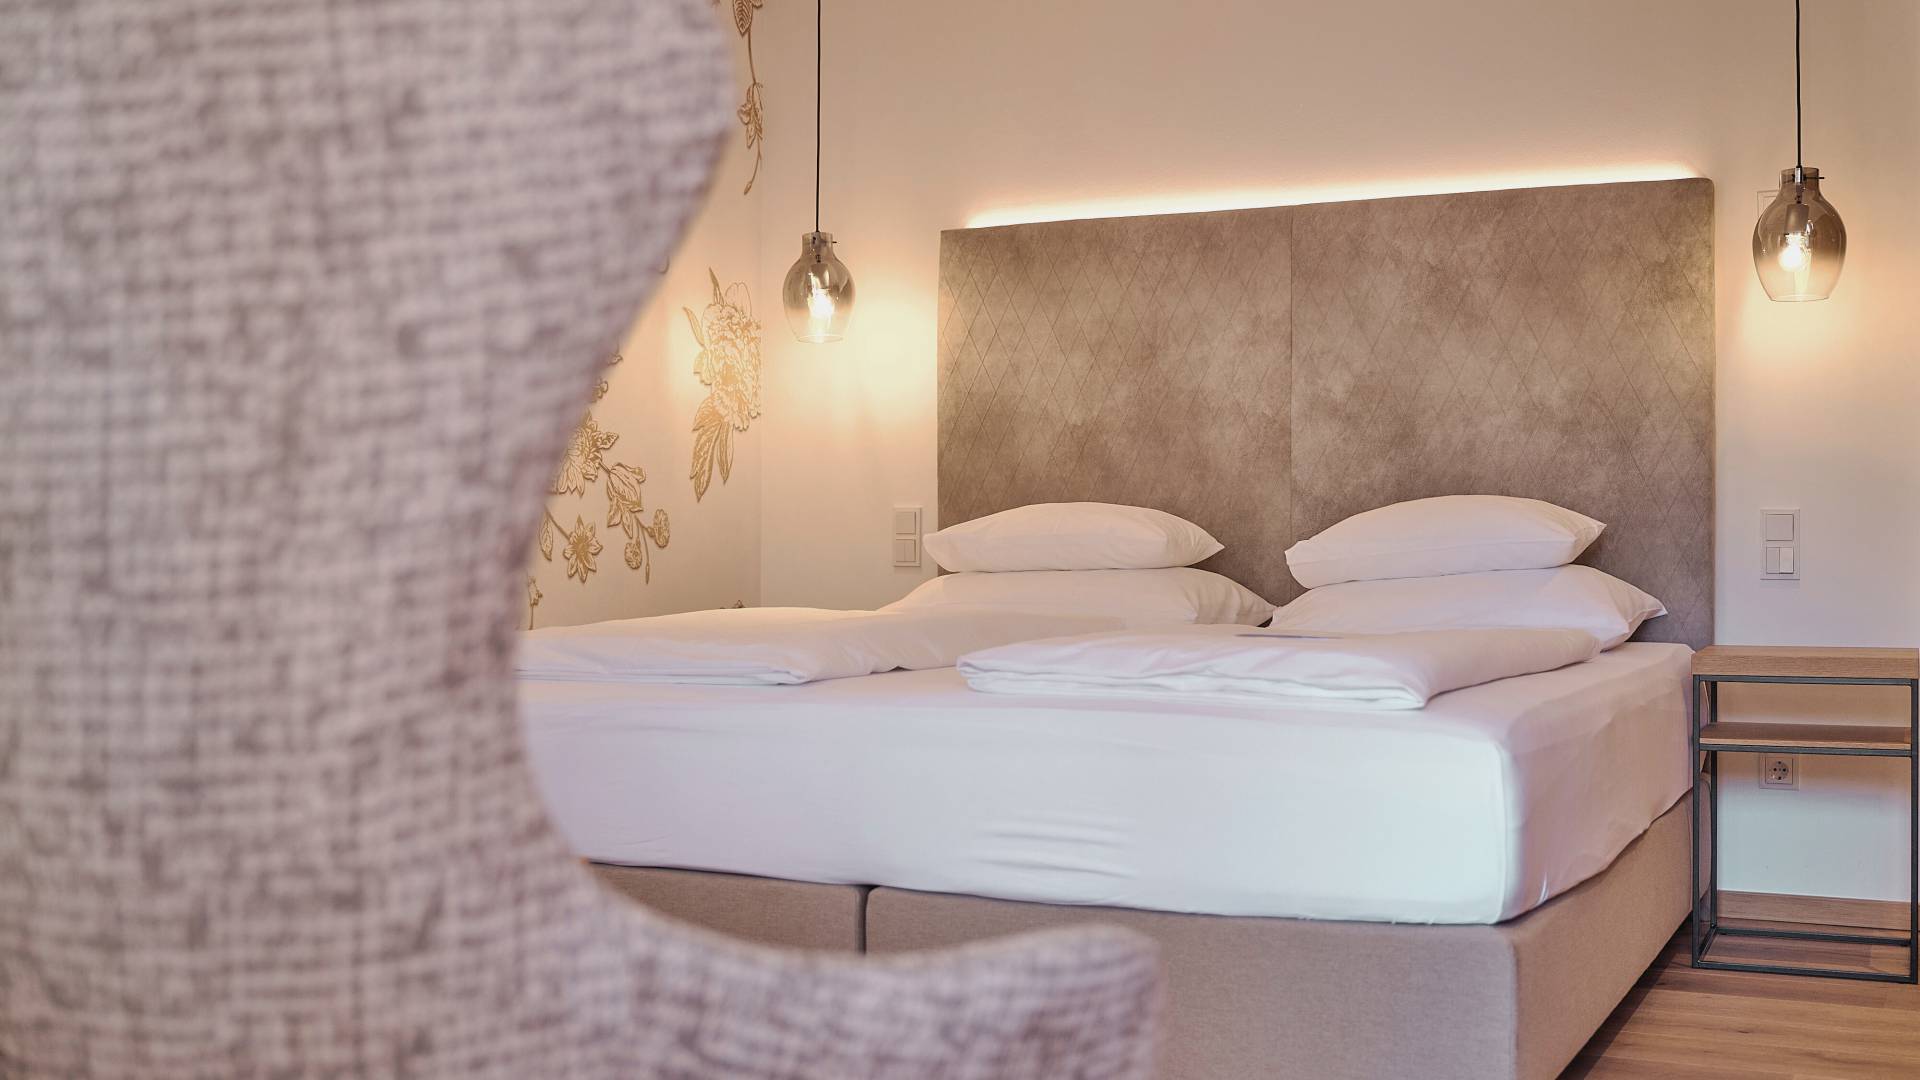 Bett im Hotelzimmer der HOCHKÖNIGIN mit stylischen Lampen und edler Tapete mit goldenen Blumen